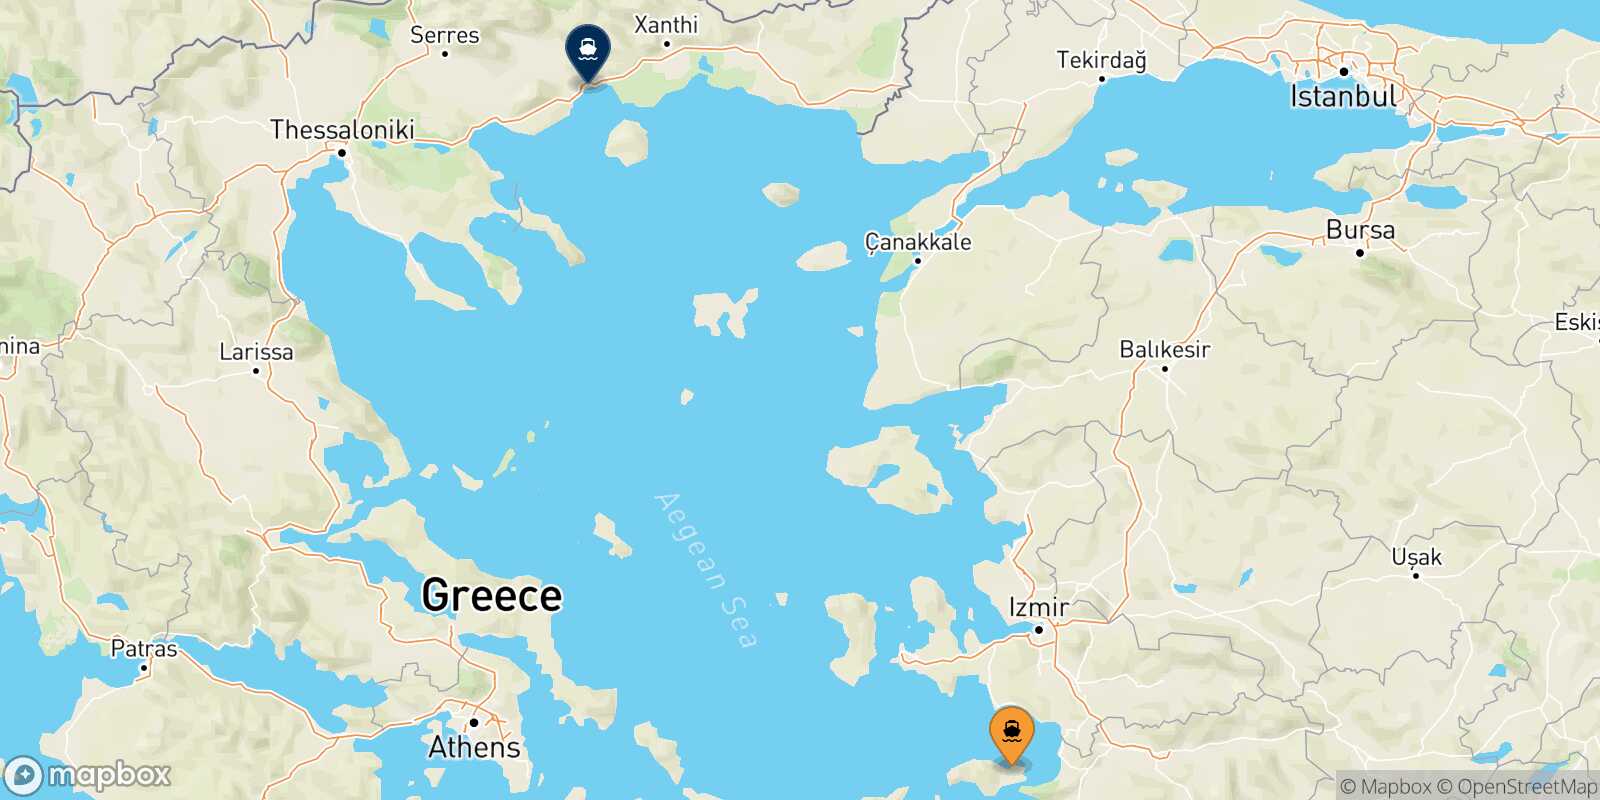 Vathi (Samos) Kavala route map